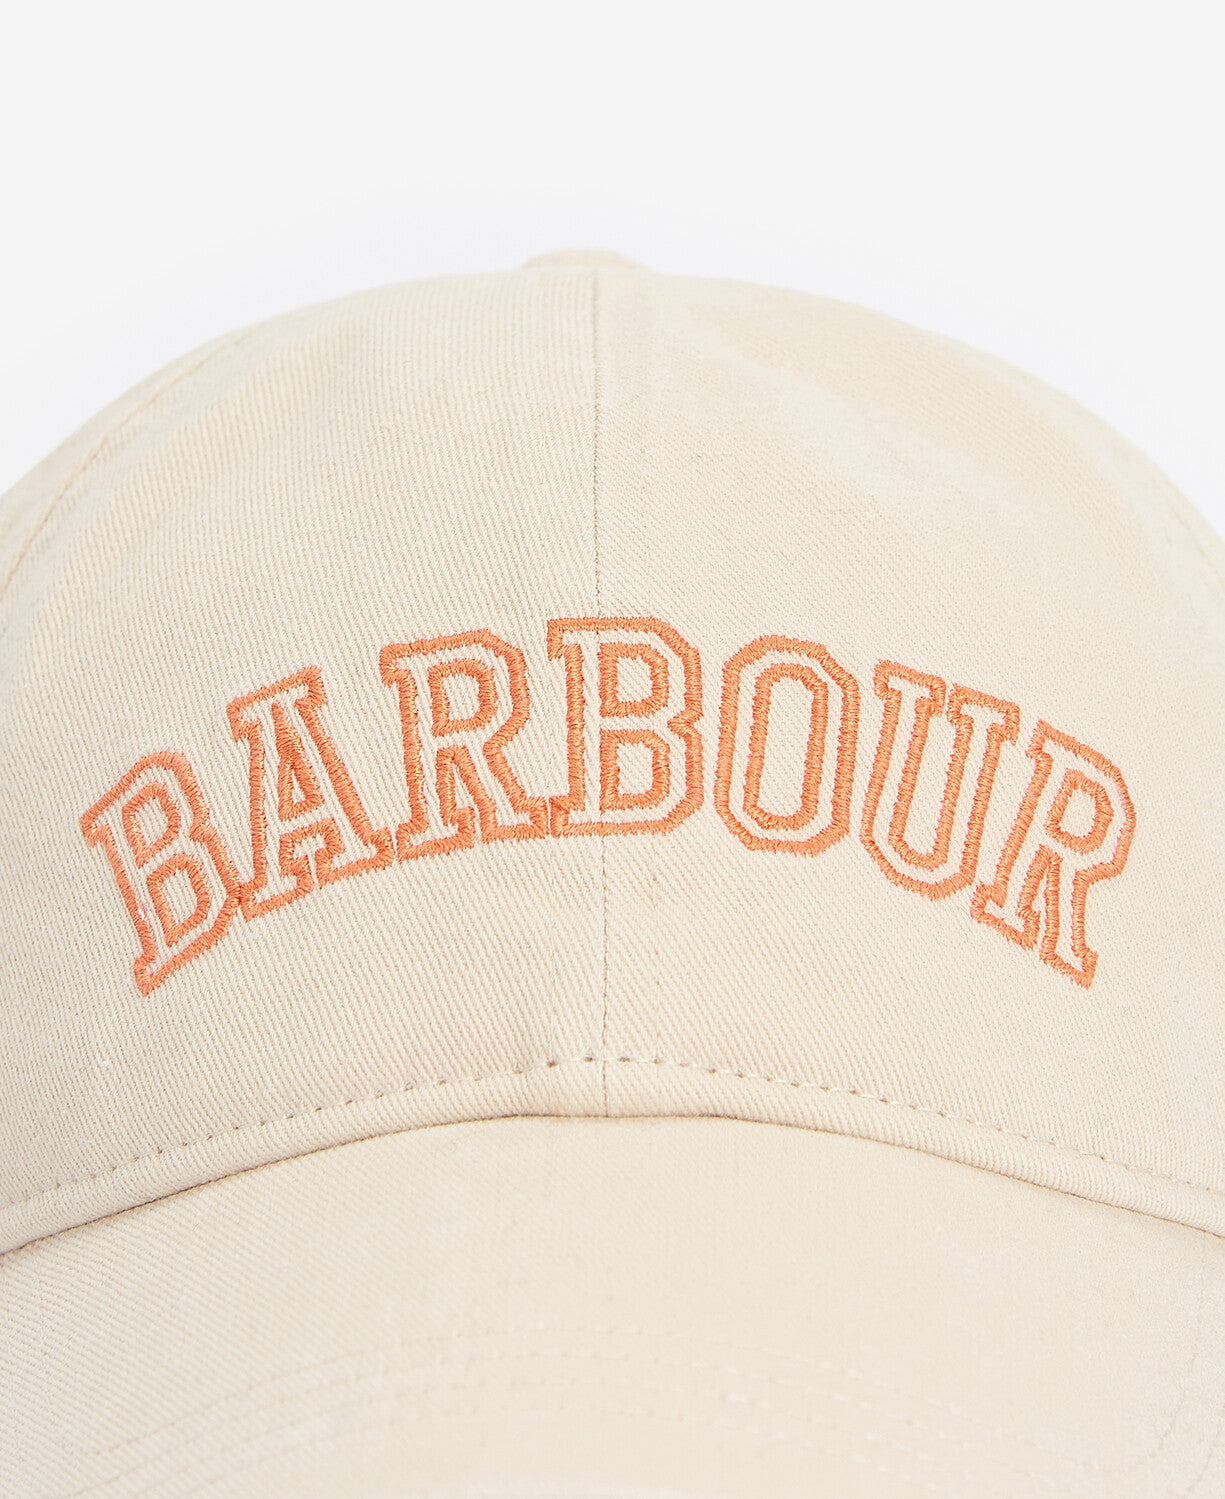 Barbour Emily Sports Cap - Parchment/Apricot Crush